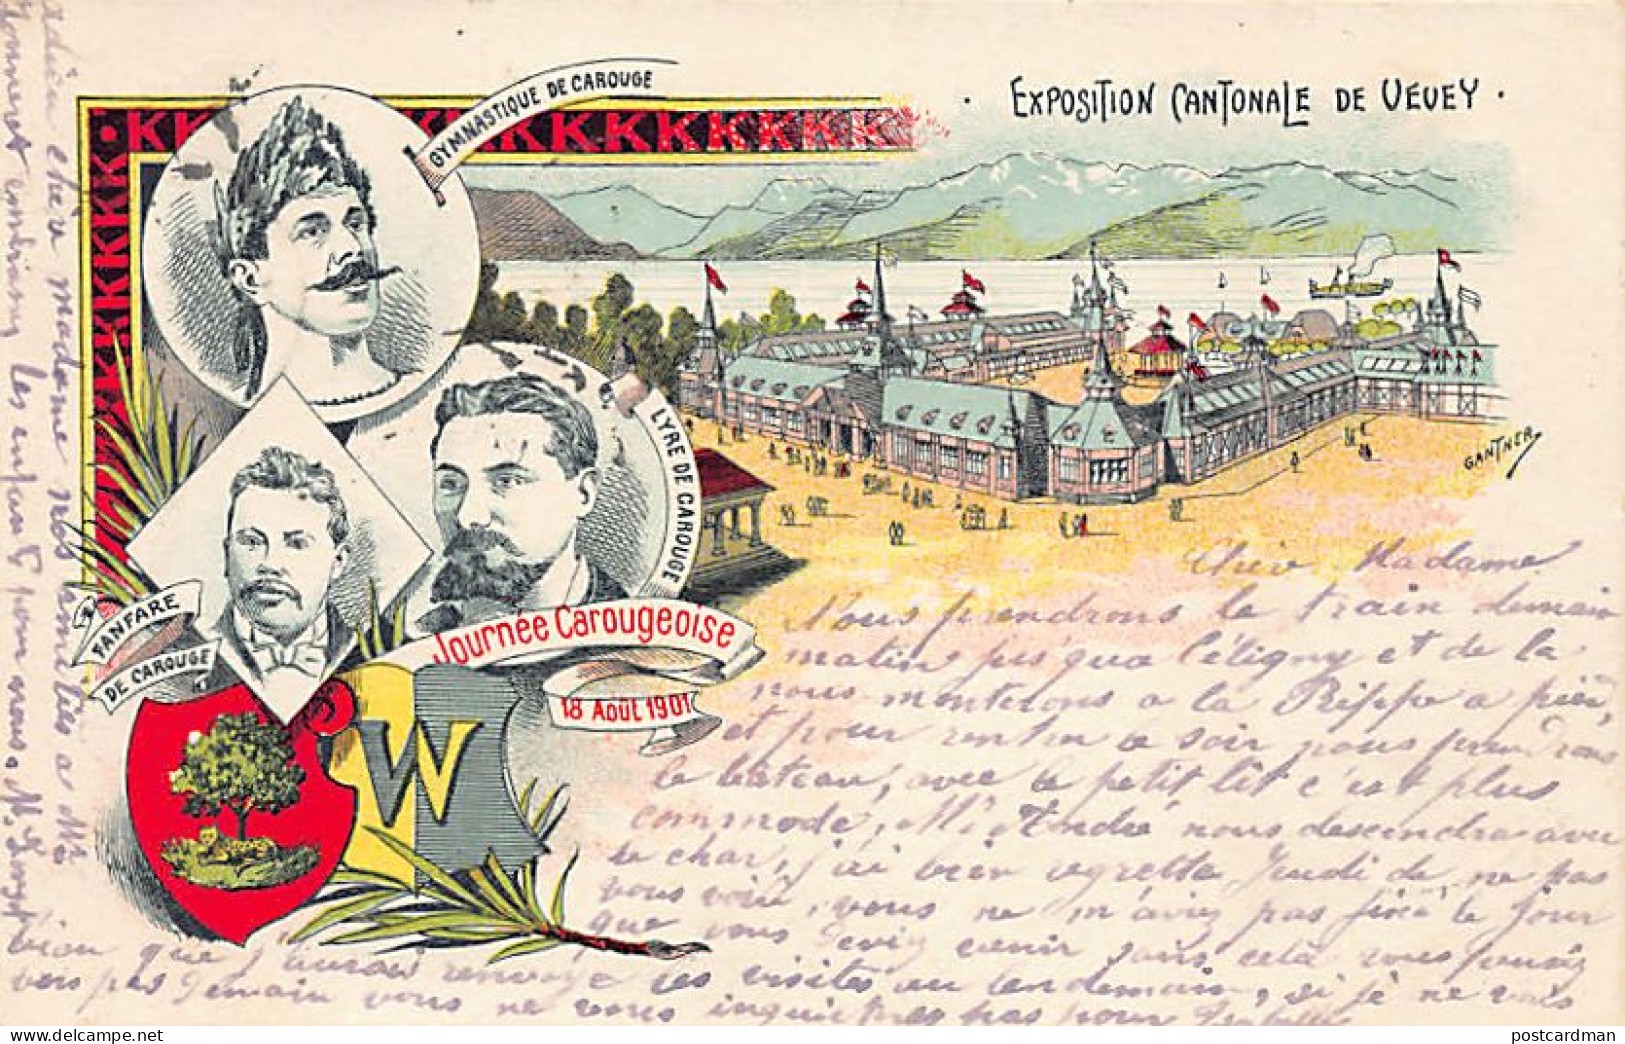 VEVEY (VD) Exposition Cantonale - Journée Carougeoise, 18 Août 1901 - Vevey